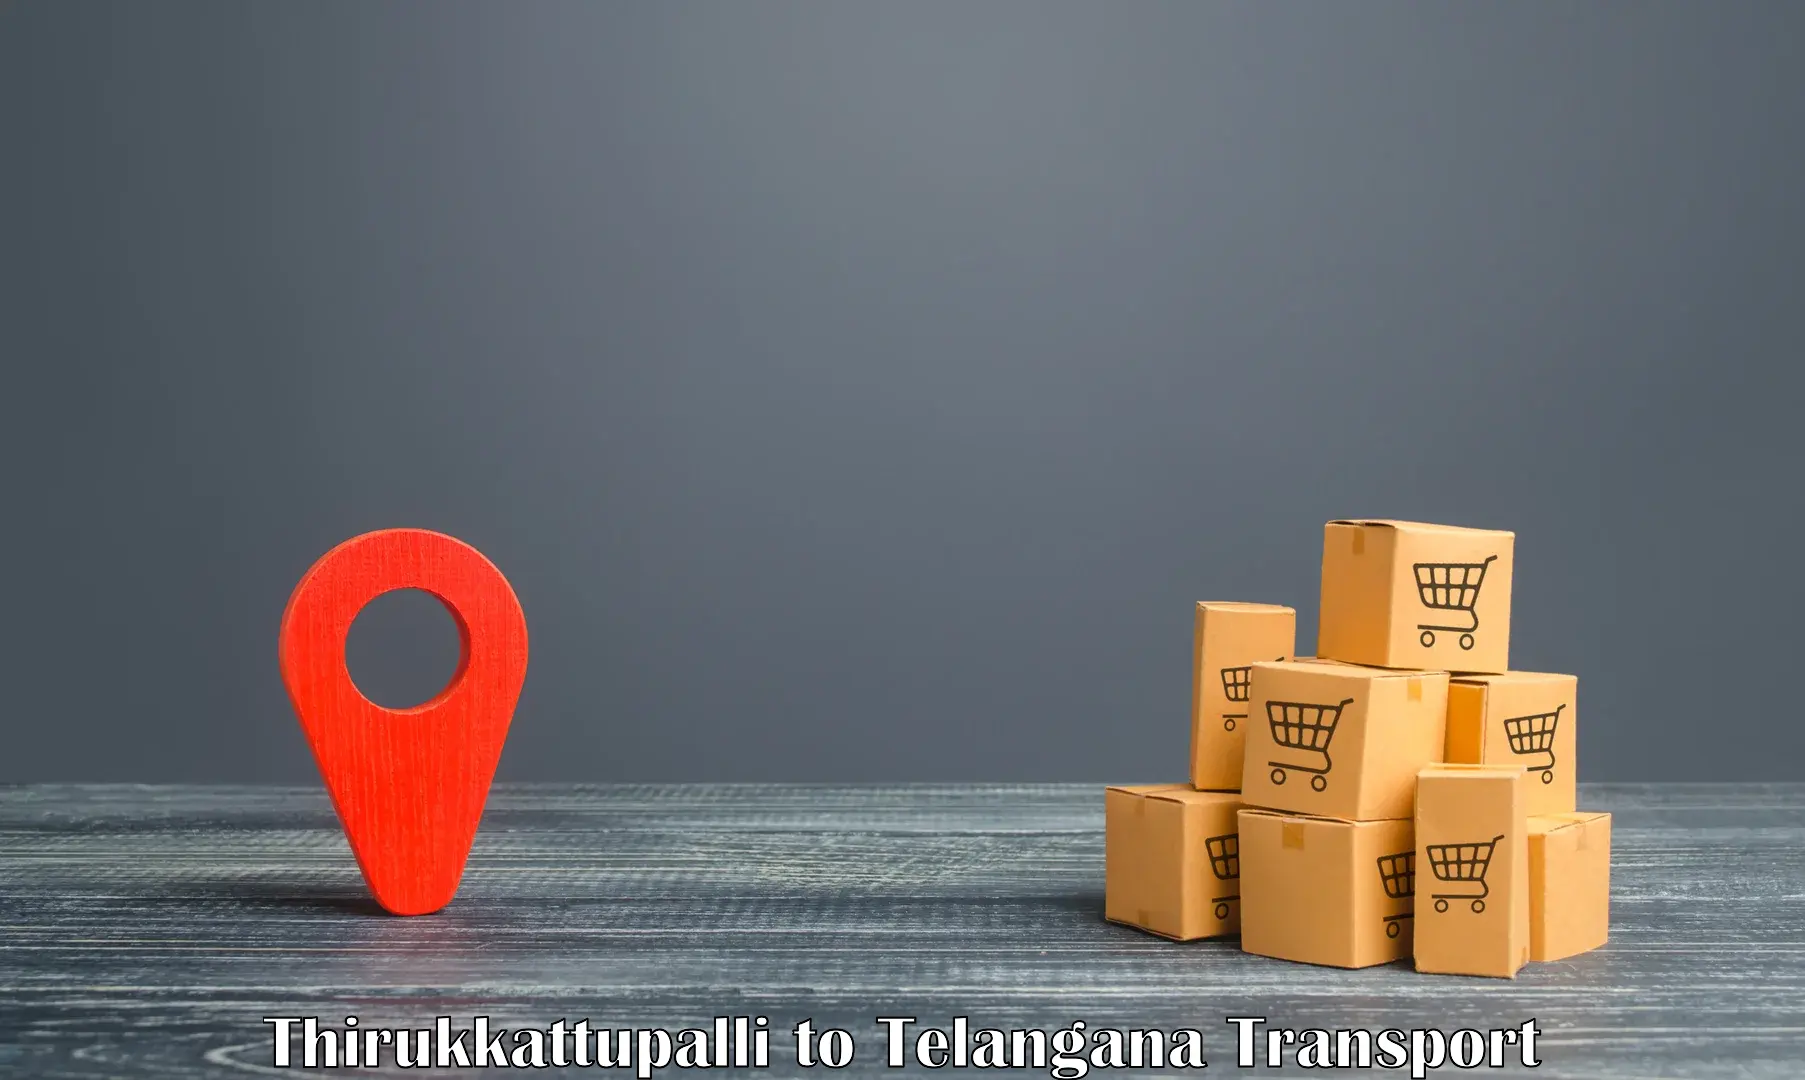 Container transport service Thirukkattupalli to Sikanderguda